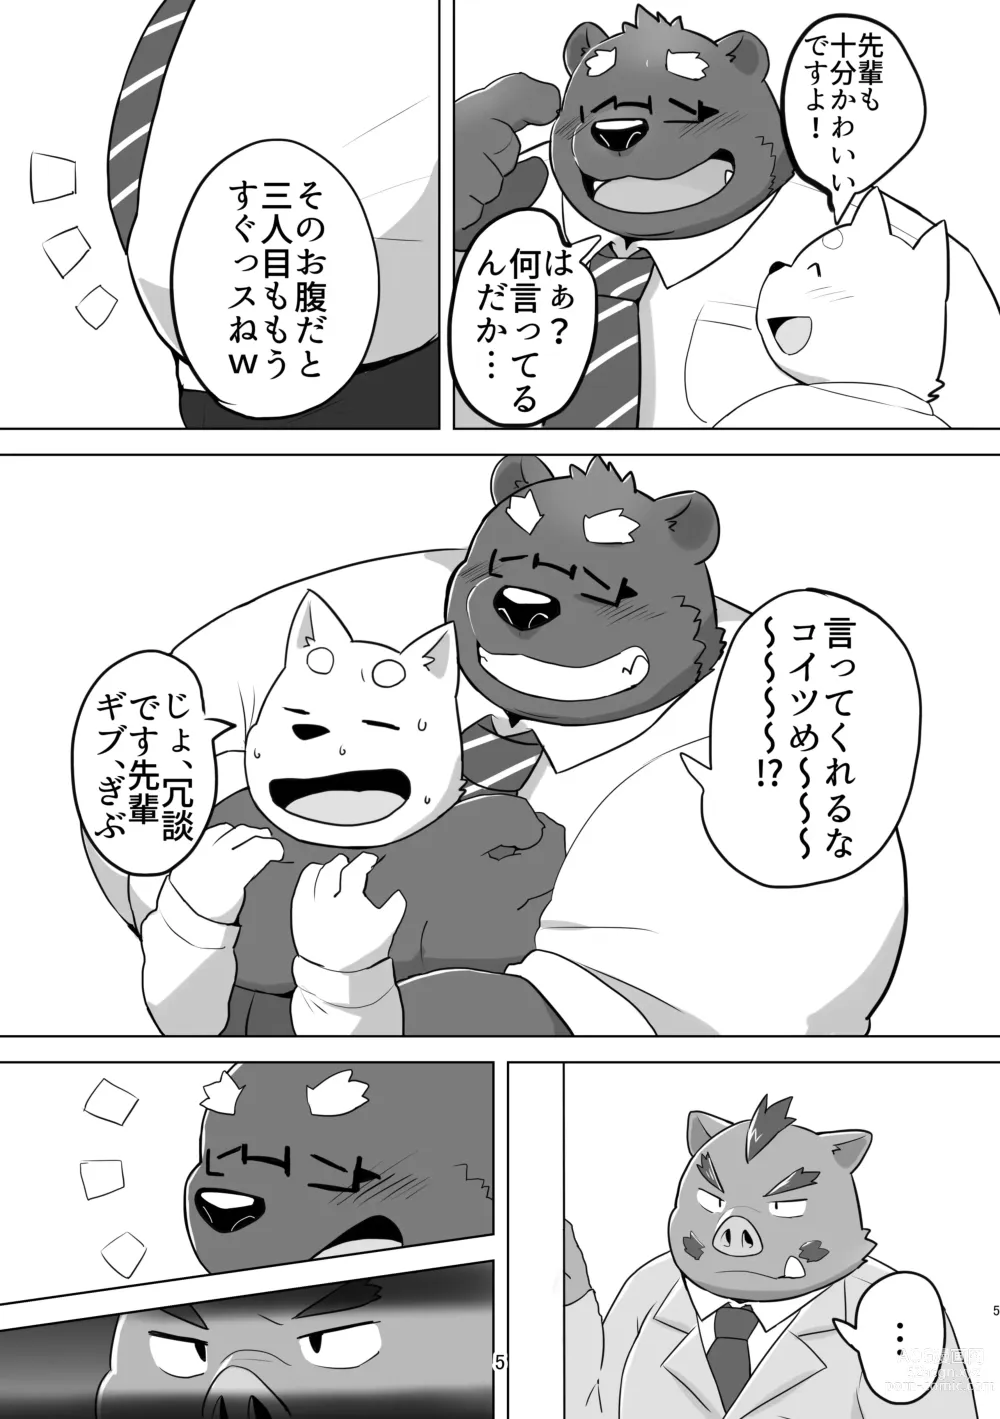 Page 5 of doujinshi KUMAPAPA 1